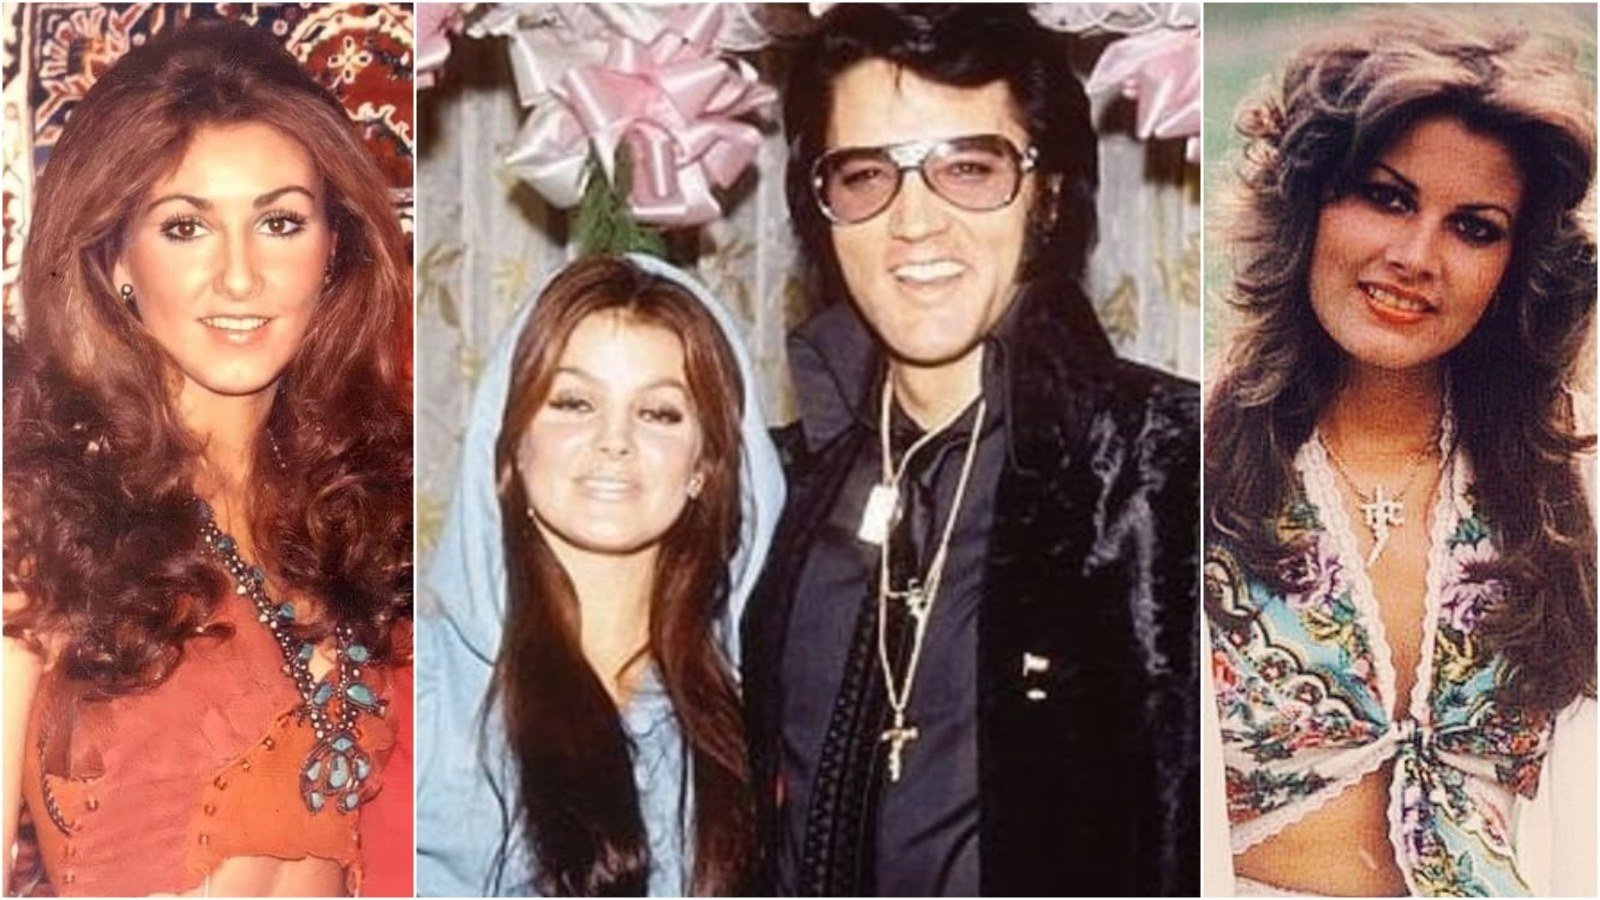 Elvis Presley was romantically connected to Linda Thompson, Priscilla Presley and Ginger Alden. Photos: @elvis__and__priscilla @night_rose_elvis.presley_ajr, @ginger_alden_fan/Instagram